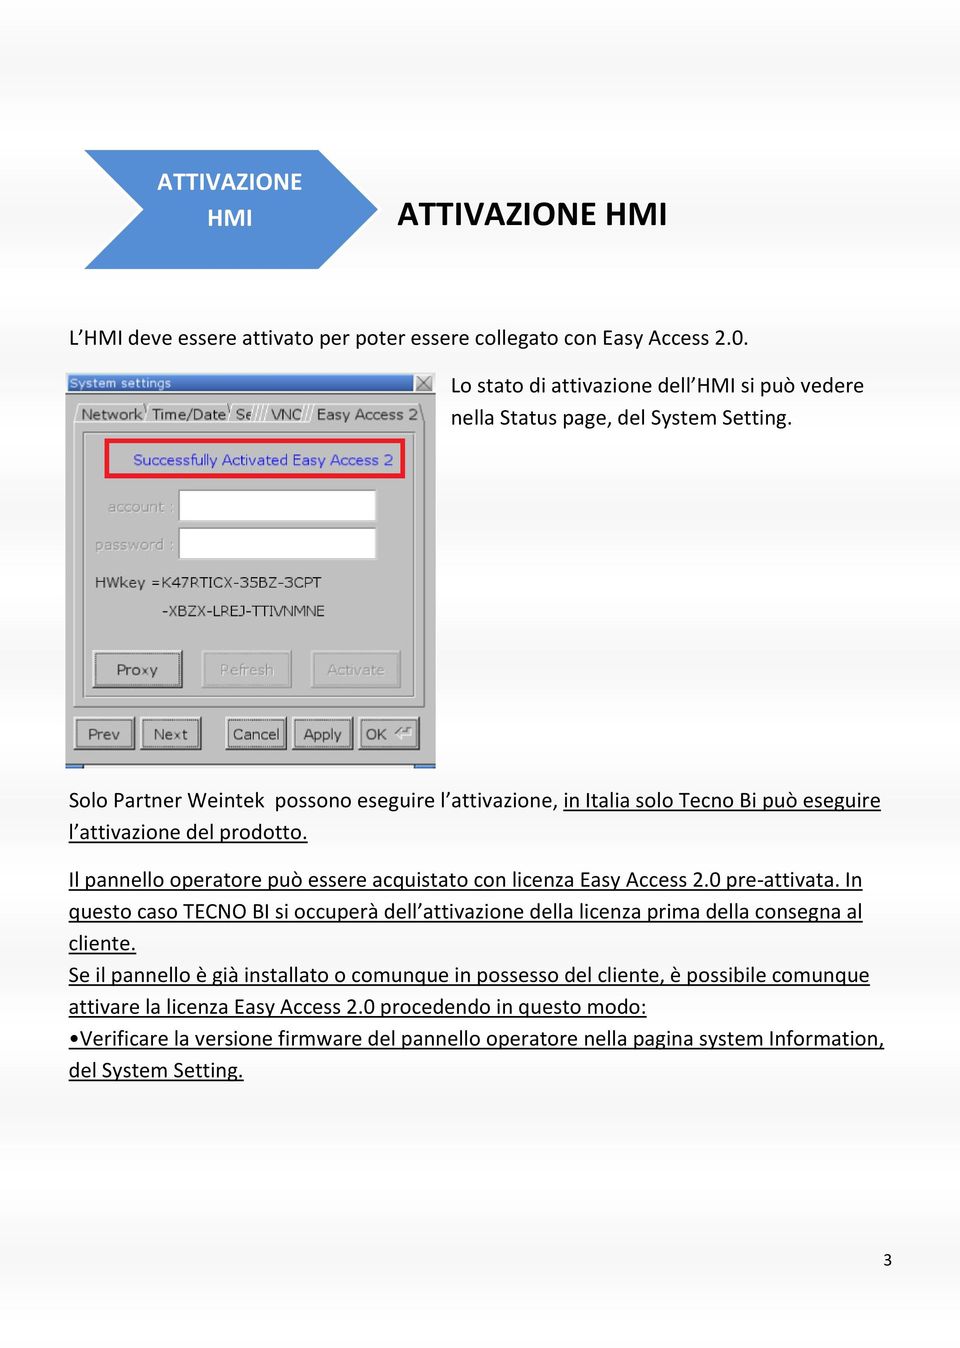 Solo Partner Weintek possono eseguire l attivazione, in Italia solo Tecno Bi può eseguire l attivazione del prodotto. Il pannello operatore può essere acquistato con licenza Easy Access 2.